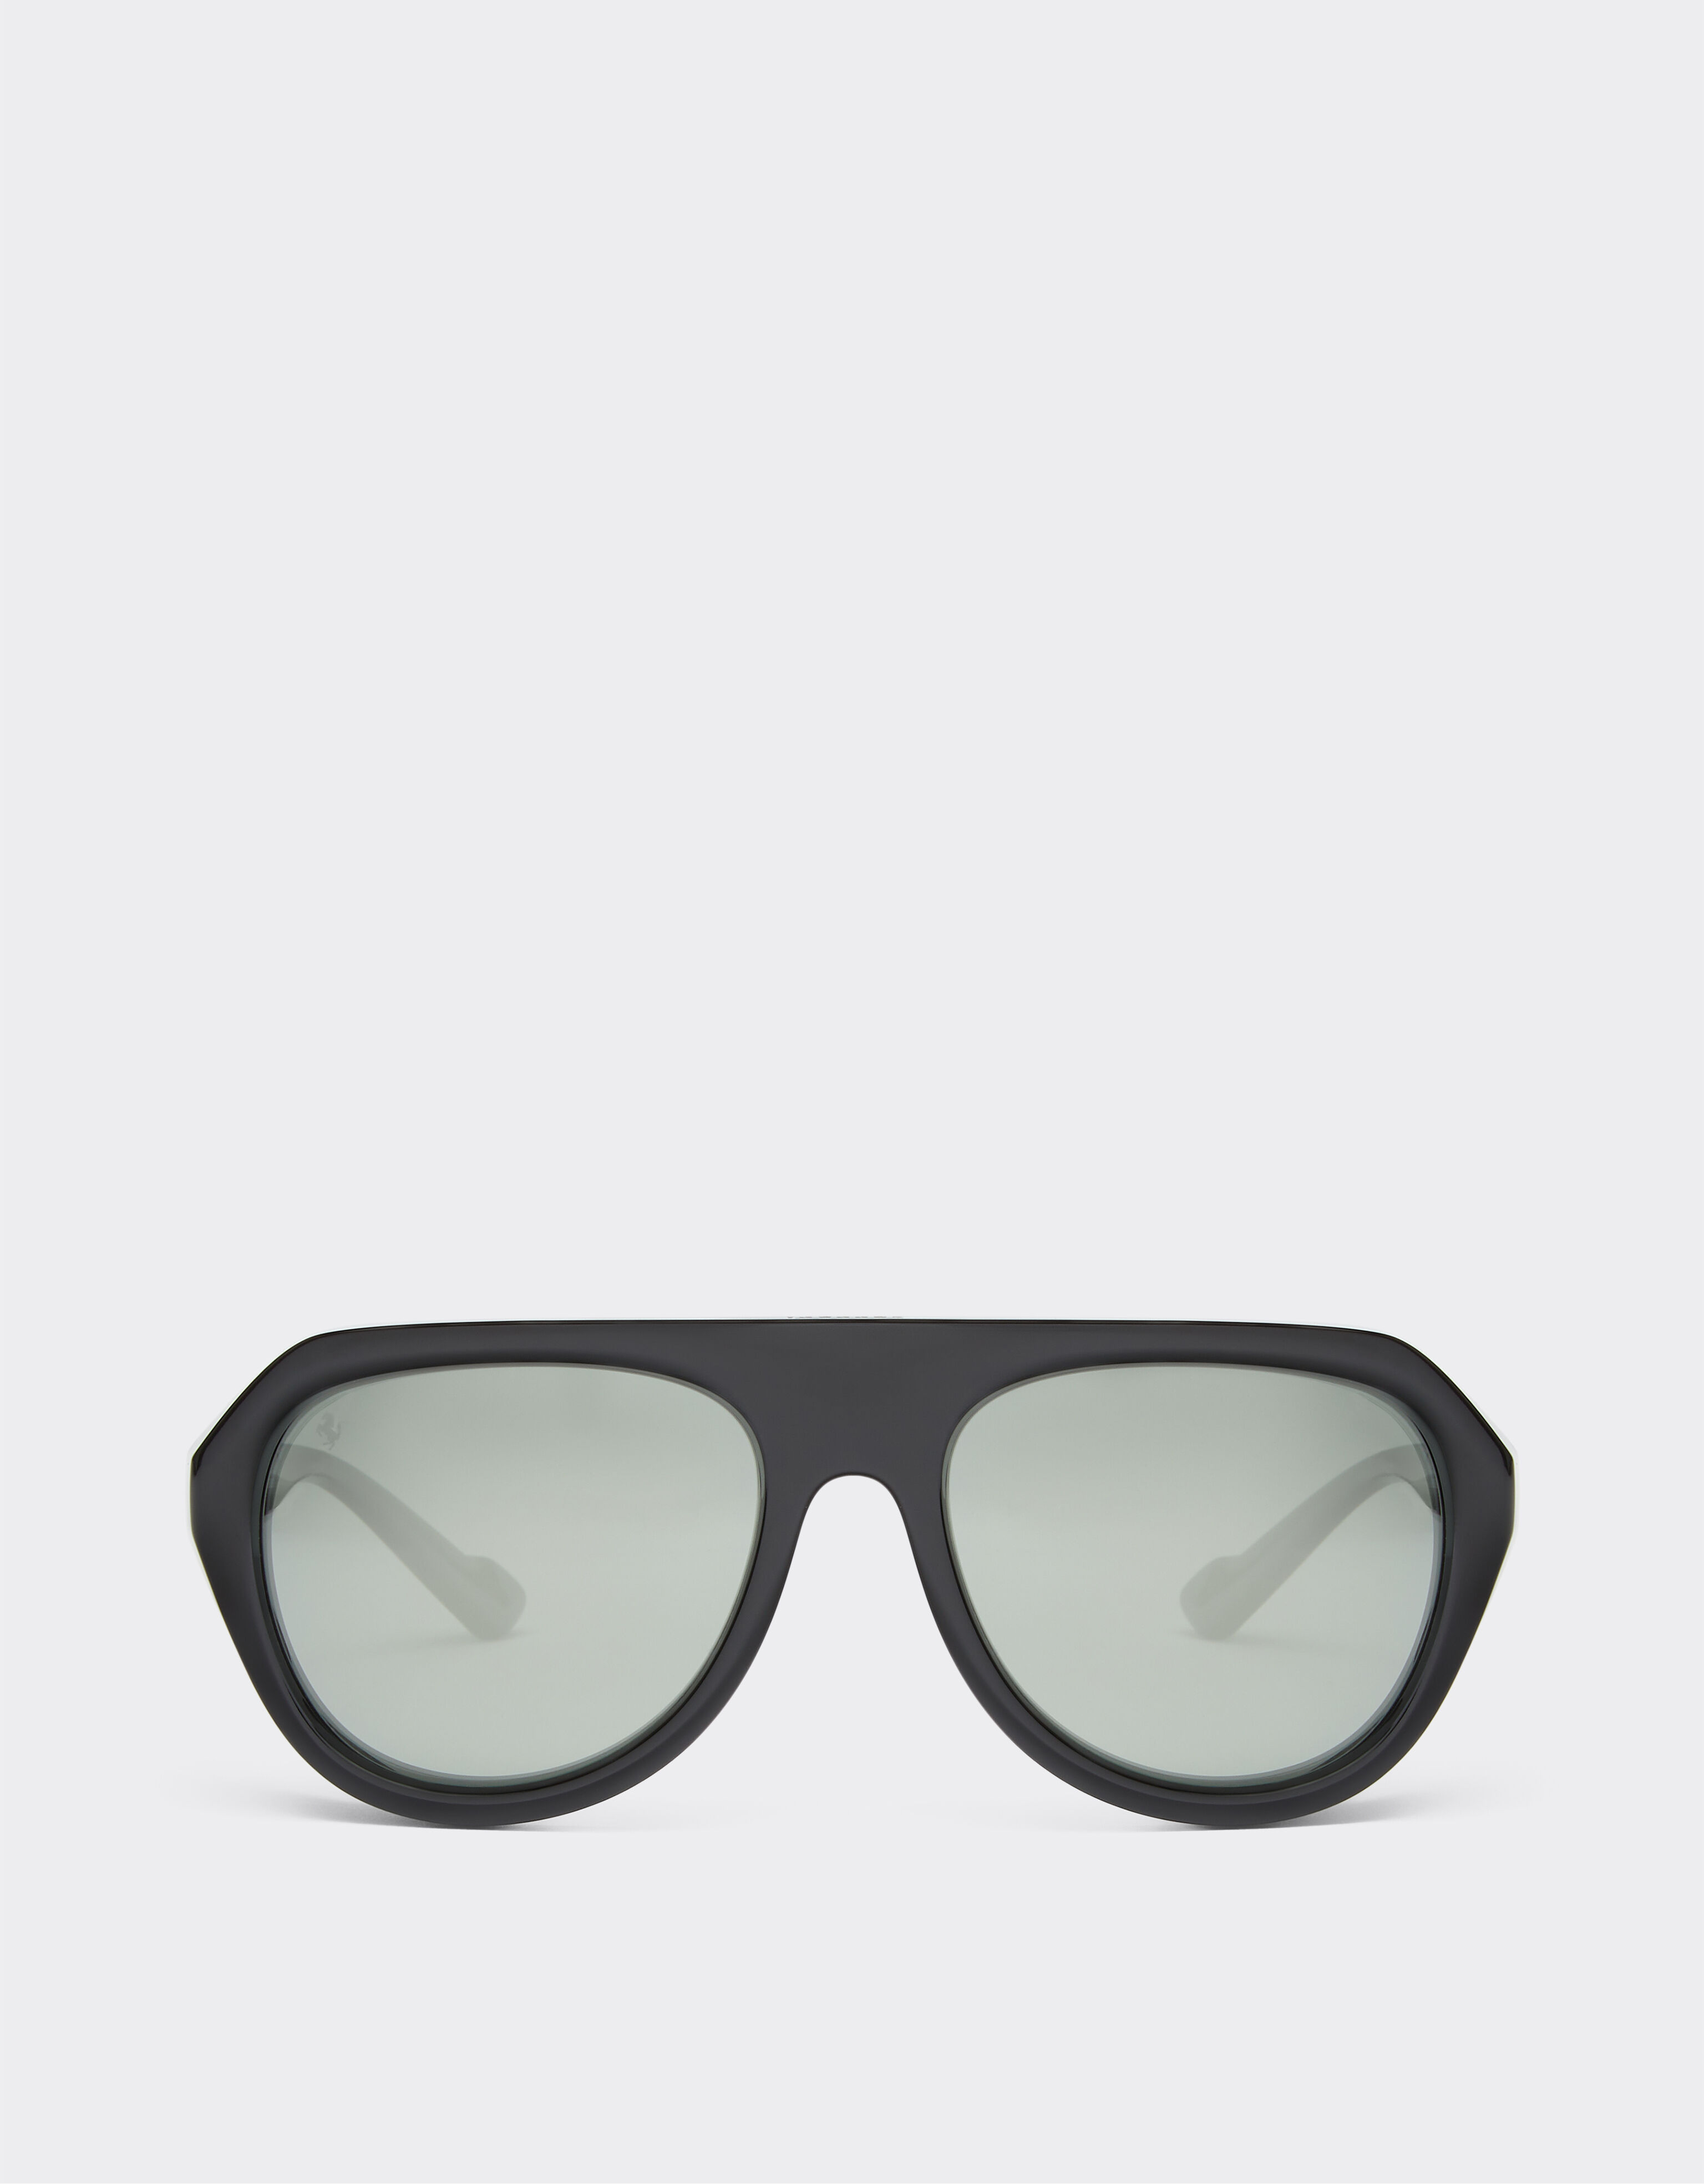 Ferrari Ferrari black sunglasses with leather details and polarised mirror lenses Black F1253f